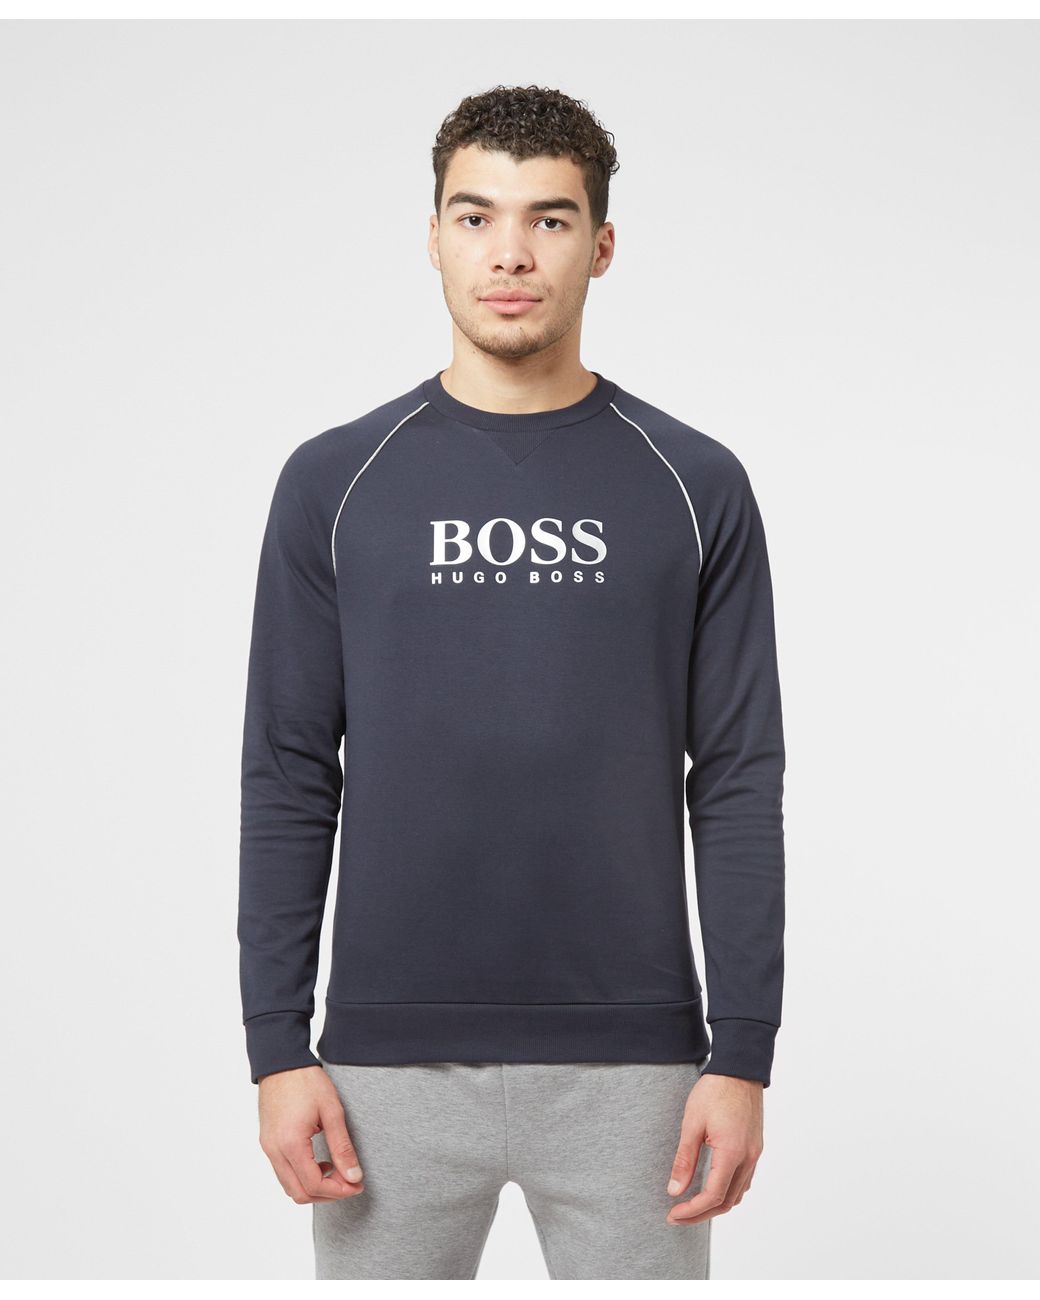 BOSS by Hugo Boss Track Sweatshirt in Blue for Men - Lyst